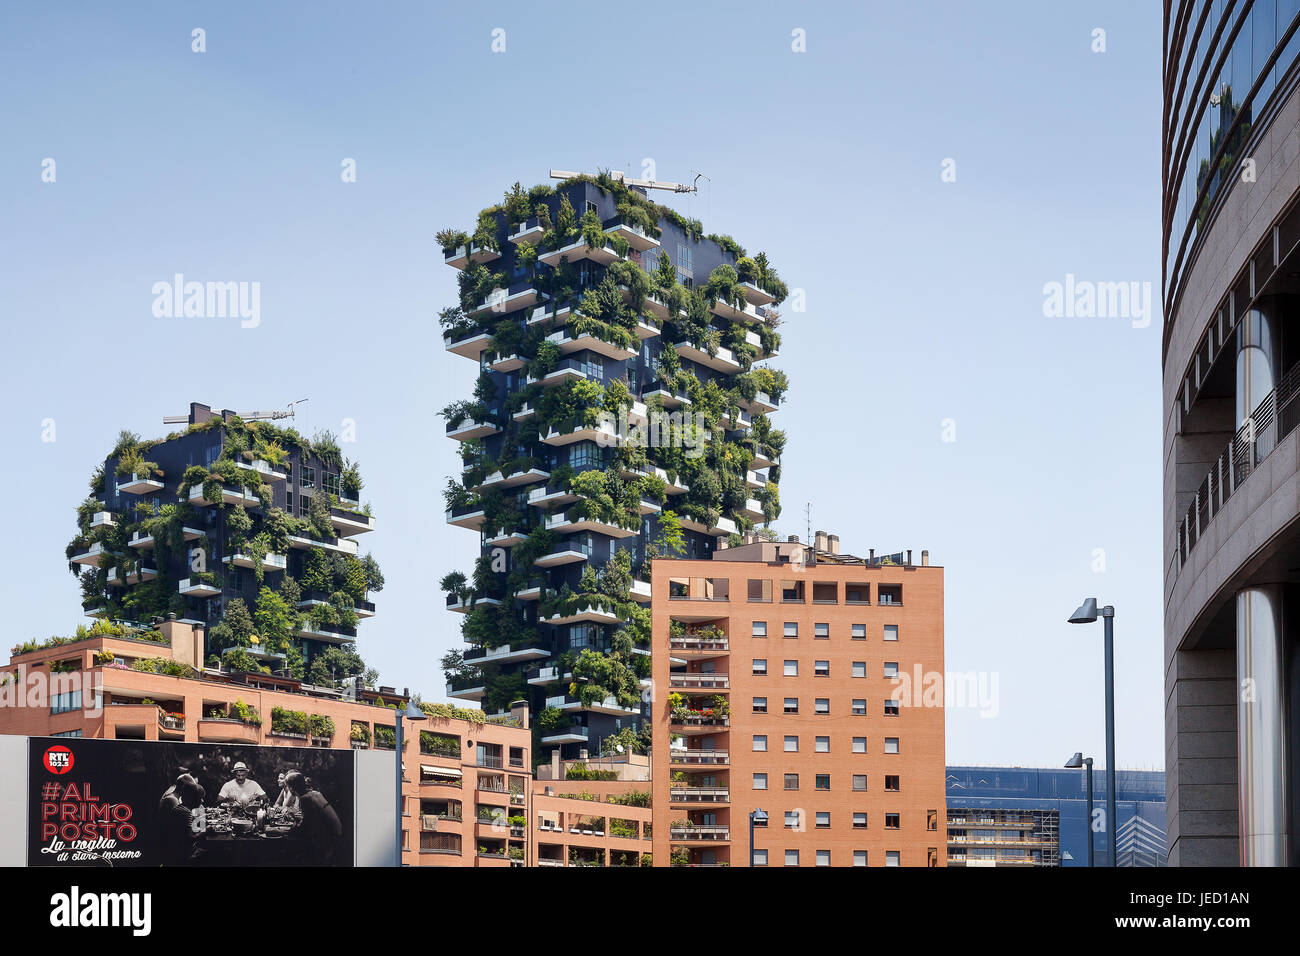 Mailand, Italien - 11. Juni 2017: Der berühmte vertikale Waldturm. Nachhaltiges Wohnbaumodell, bestehend aus einem neuen Wohnviertel. Stockfoto